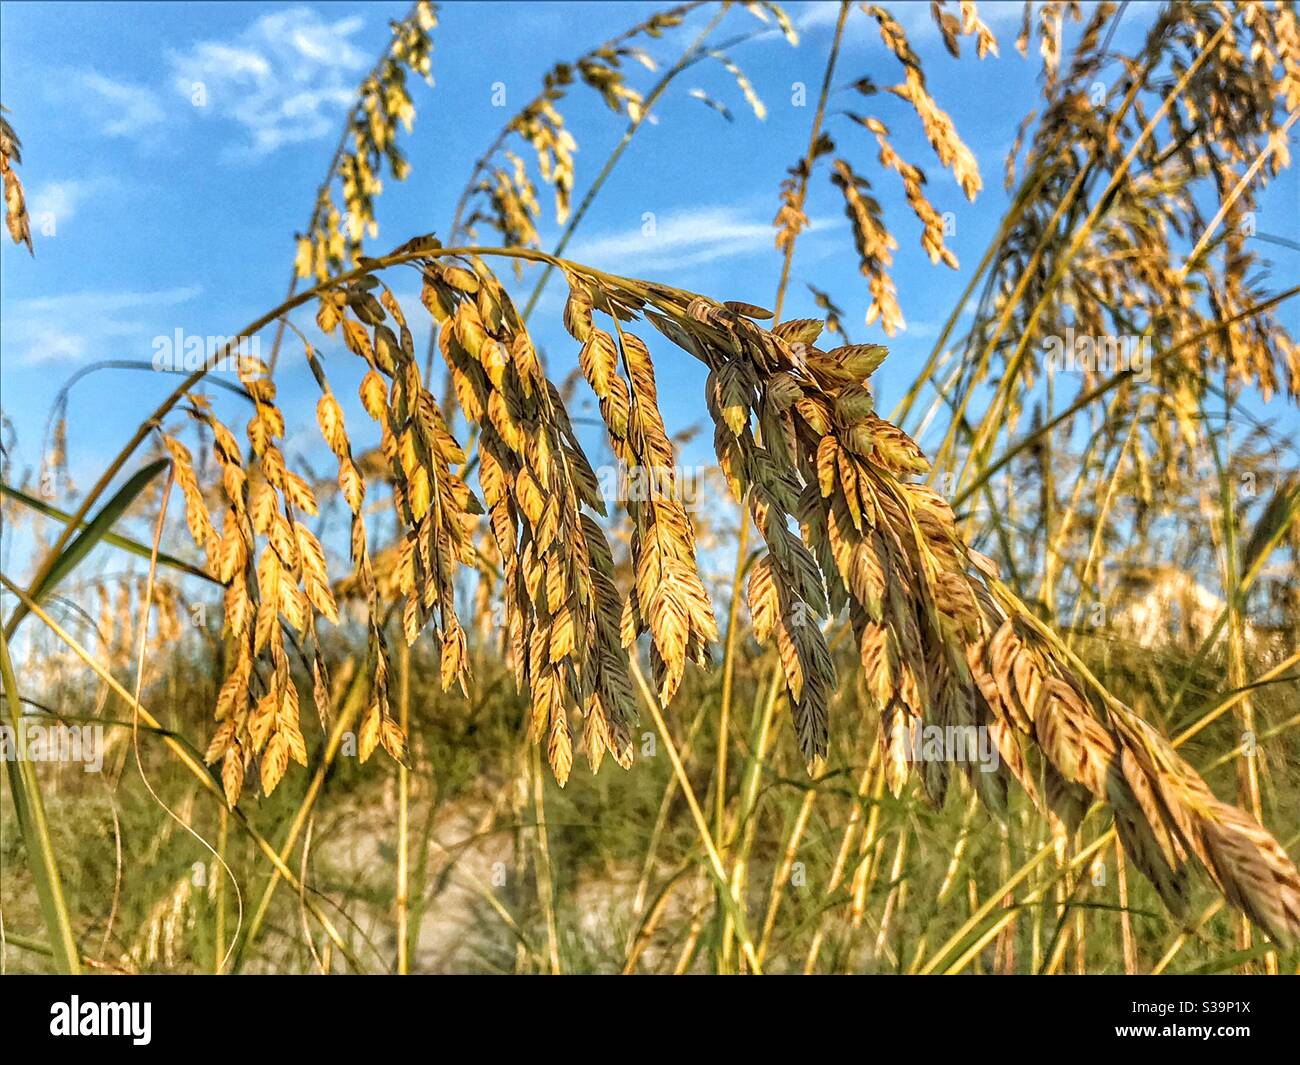 Sea oats on sand dune Stock Photo